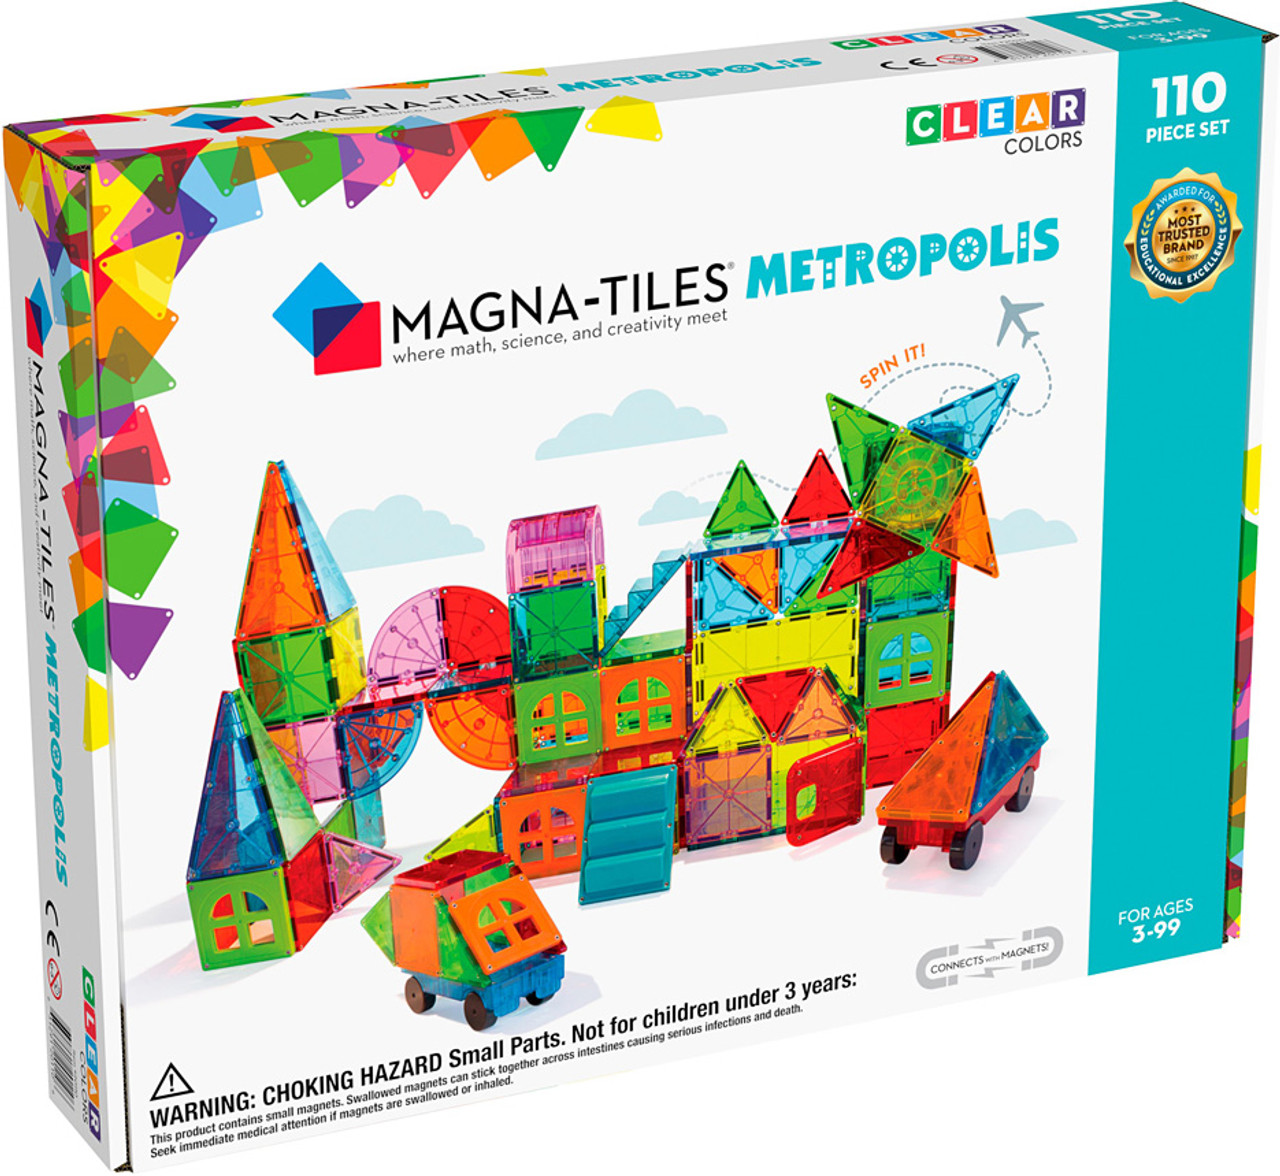 Magna-Tiles Metropolis 110 Piece Set 2